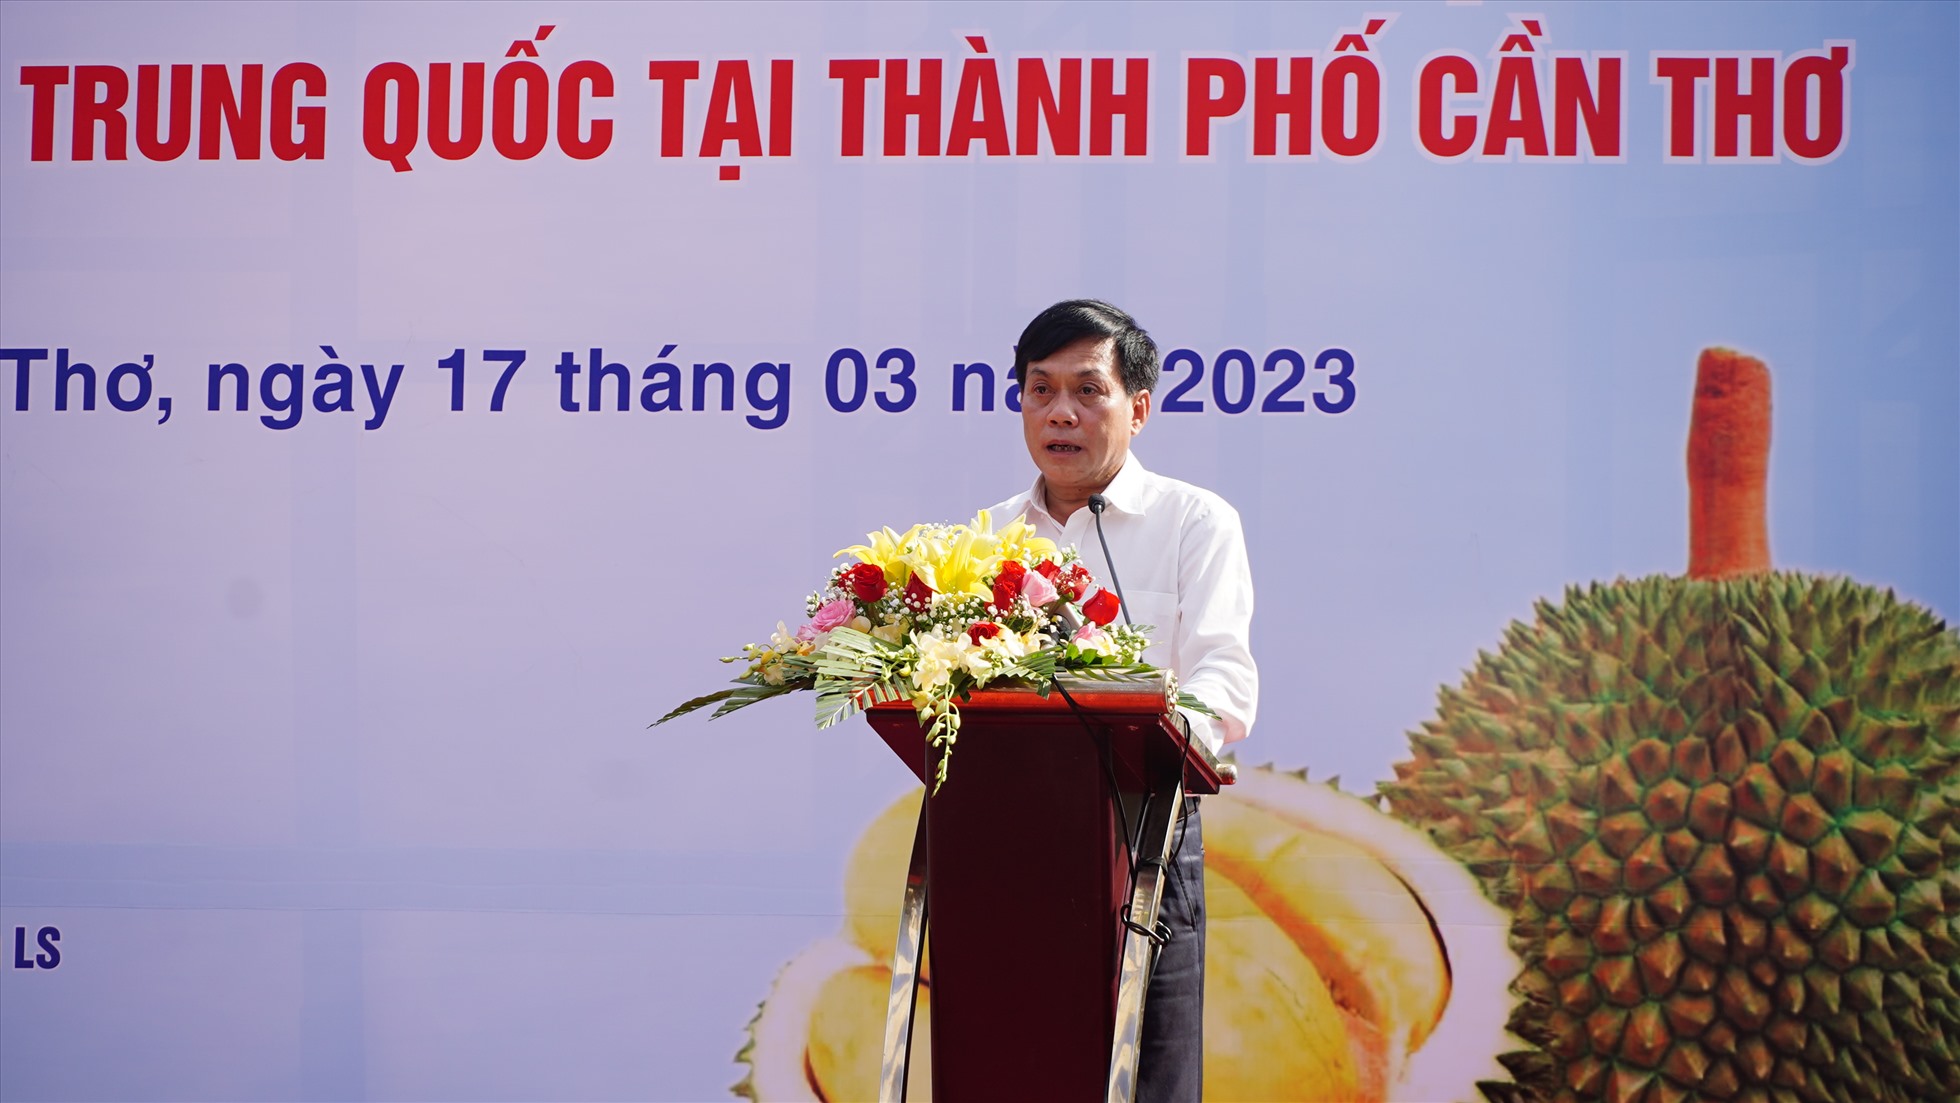 Phó Chủ tịch UBND TP. Cần Thơ Nguyễn Ngọc Hè phát biểu tại buổi lễ. Ảnh: Tạ Quang